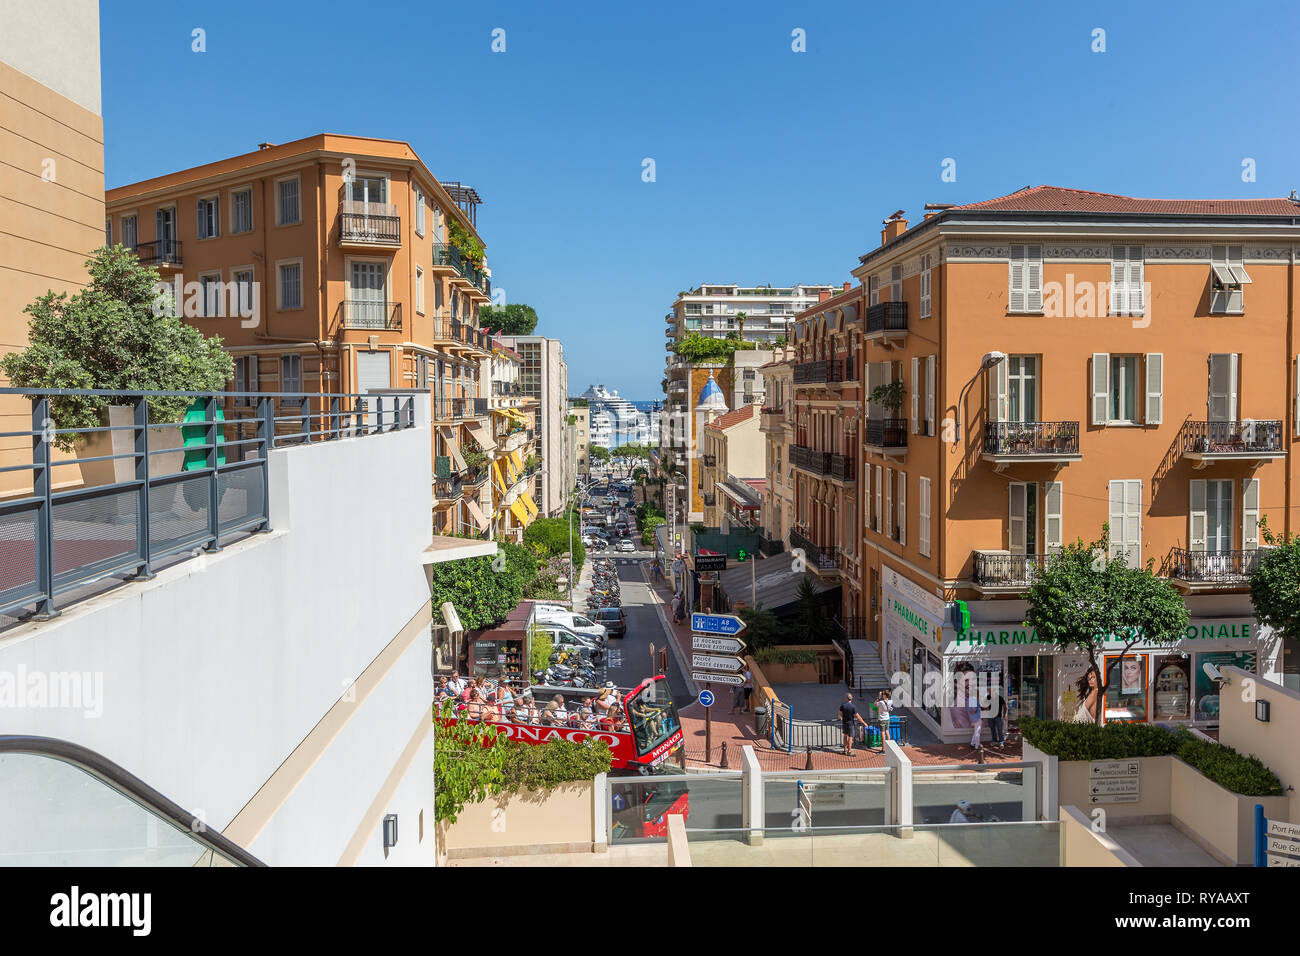 Blick durch eine Einkaufsstrasse auf den Hafen in Monte Carlo, Monaco, 29.08.2018 Bildnachweis: Mario Hommes / HH-Photography Stock Photo